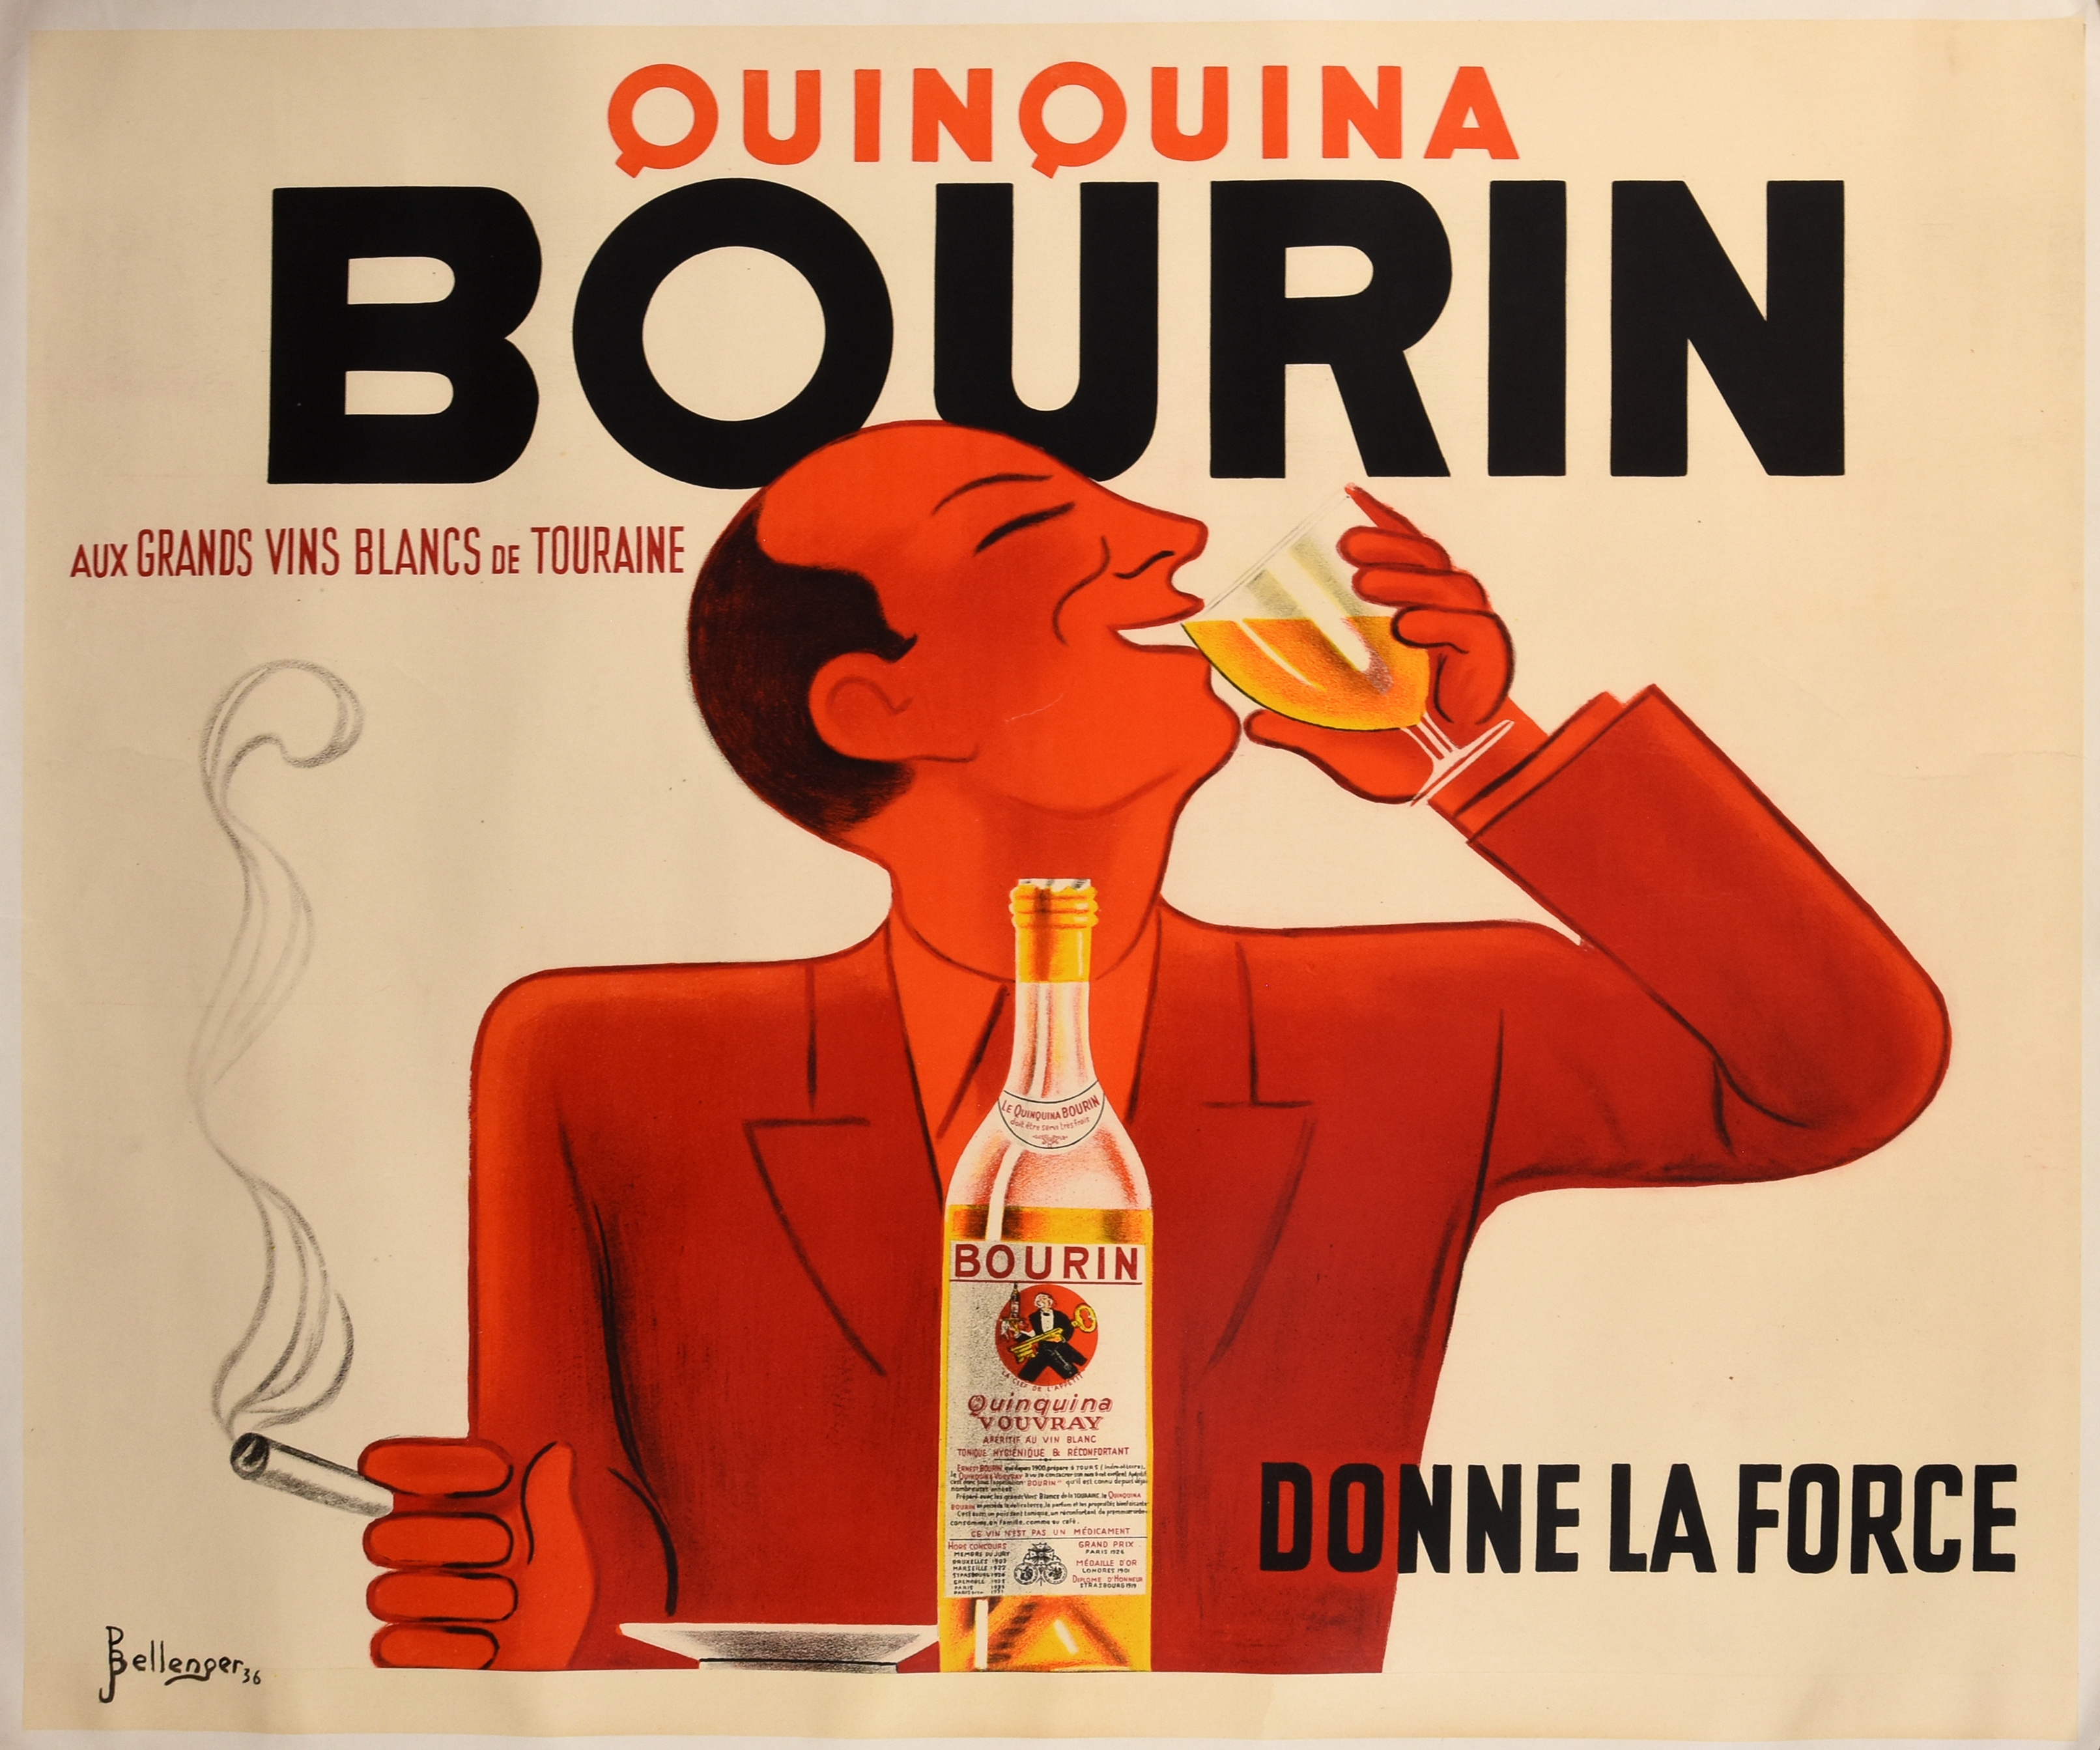 Quinquina/ Bourin/ aux grands vins blancs de Touraine// Donne la force - Pierre Bellenger